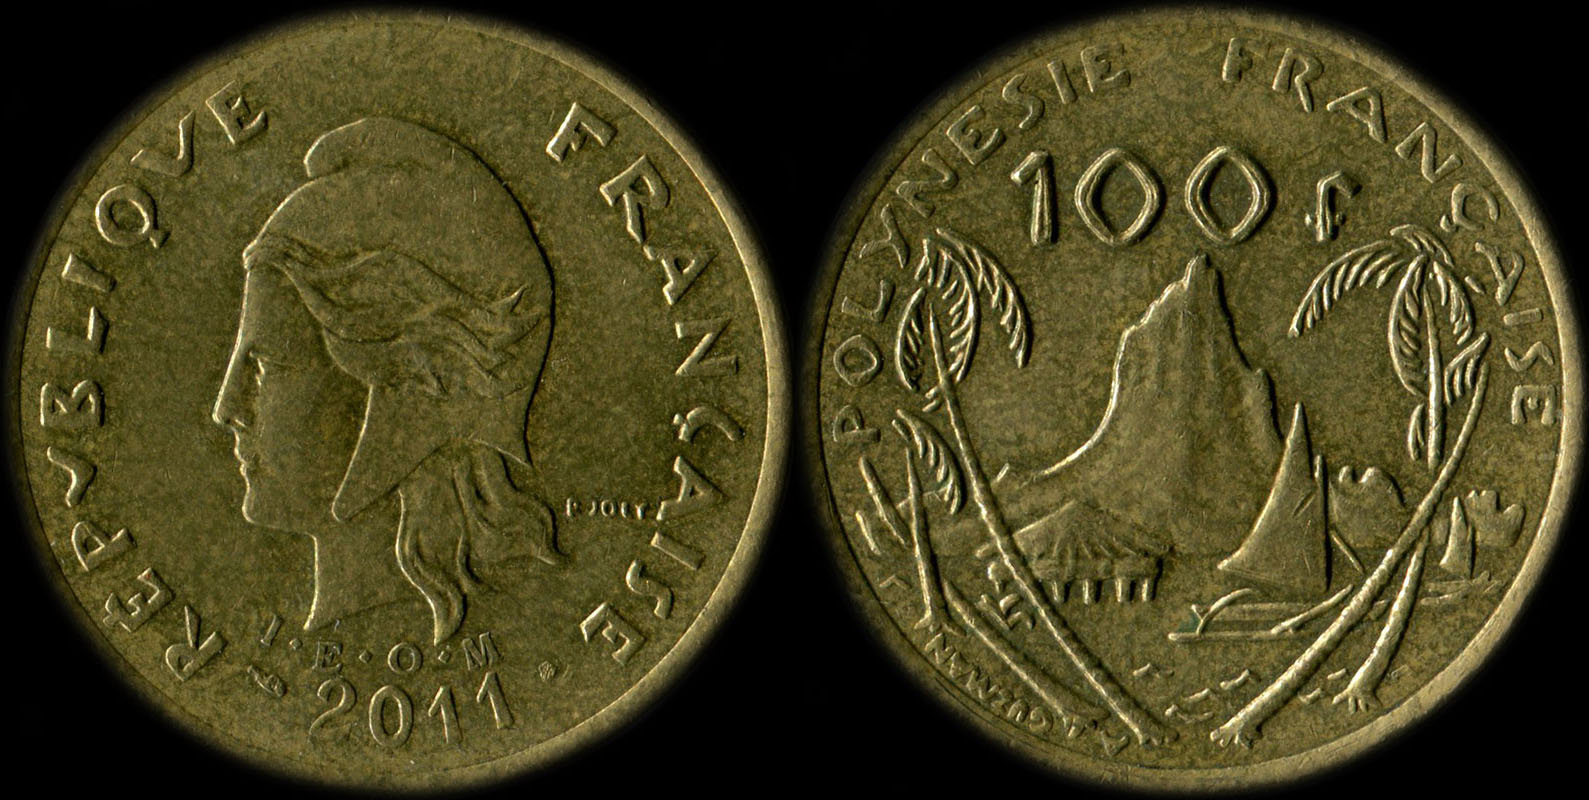 Pice de 100 francs 2011 - I.E.O.M. Polynsie franaise